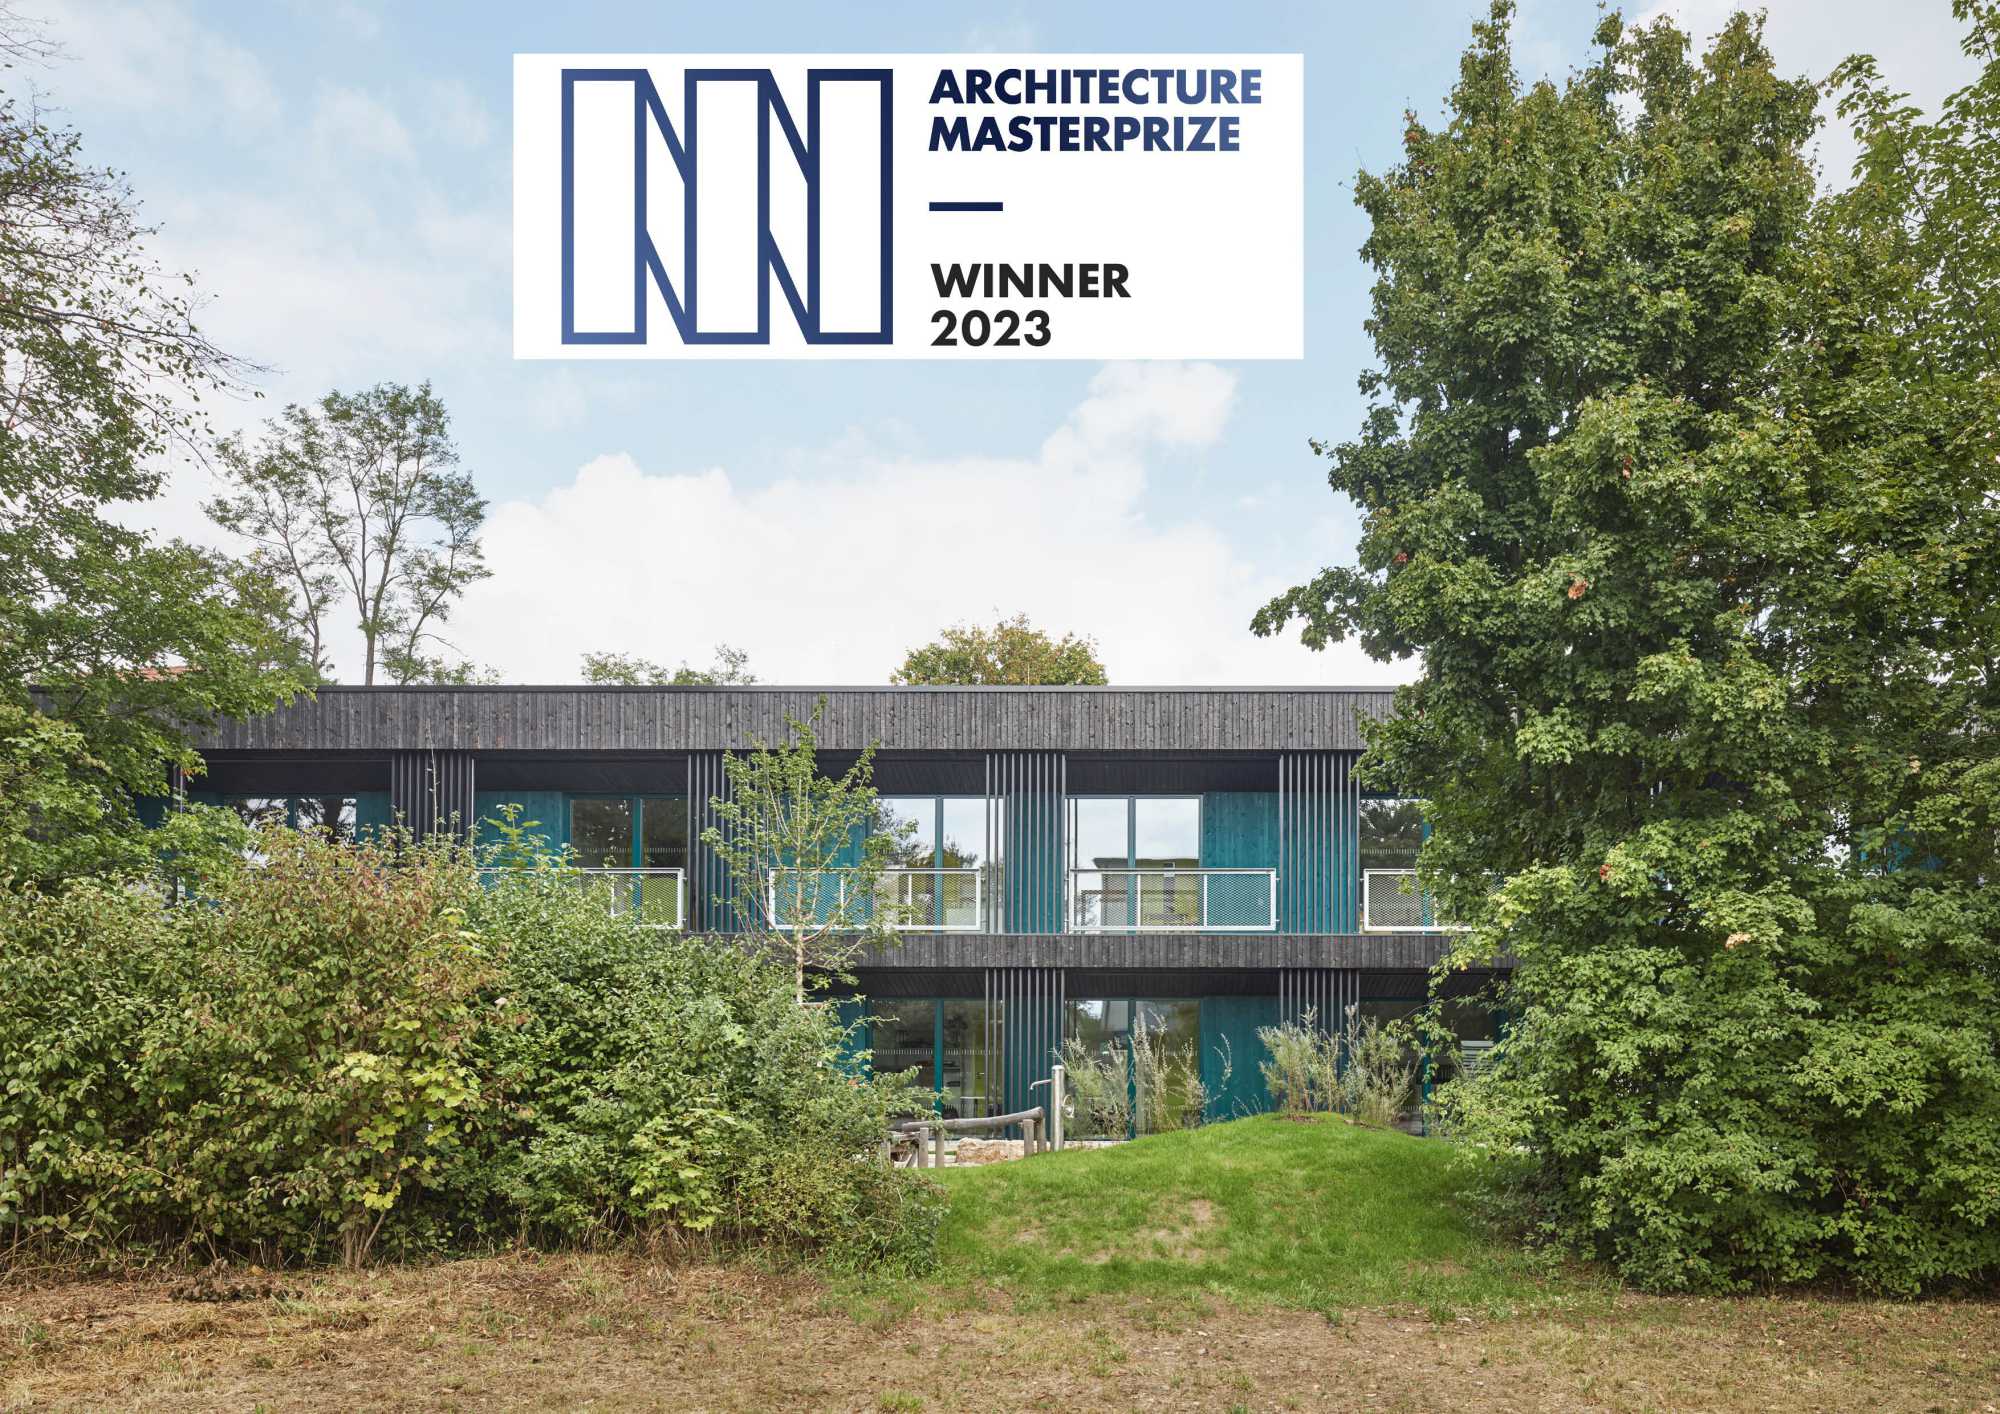 Neubau der Kindertagesstätte Sofie Haug erhält Auszeichnung des Architecture MasterPrize 2023 ({project_images:field_row_count})